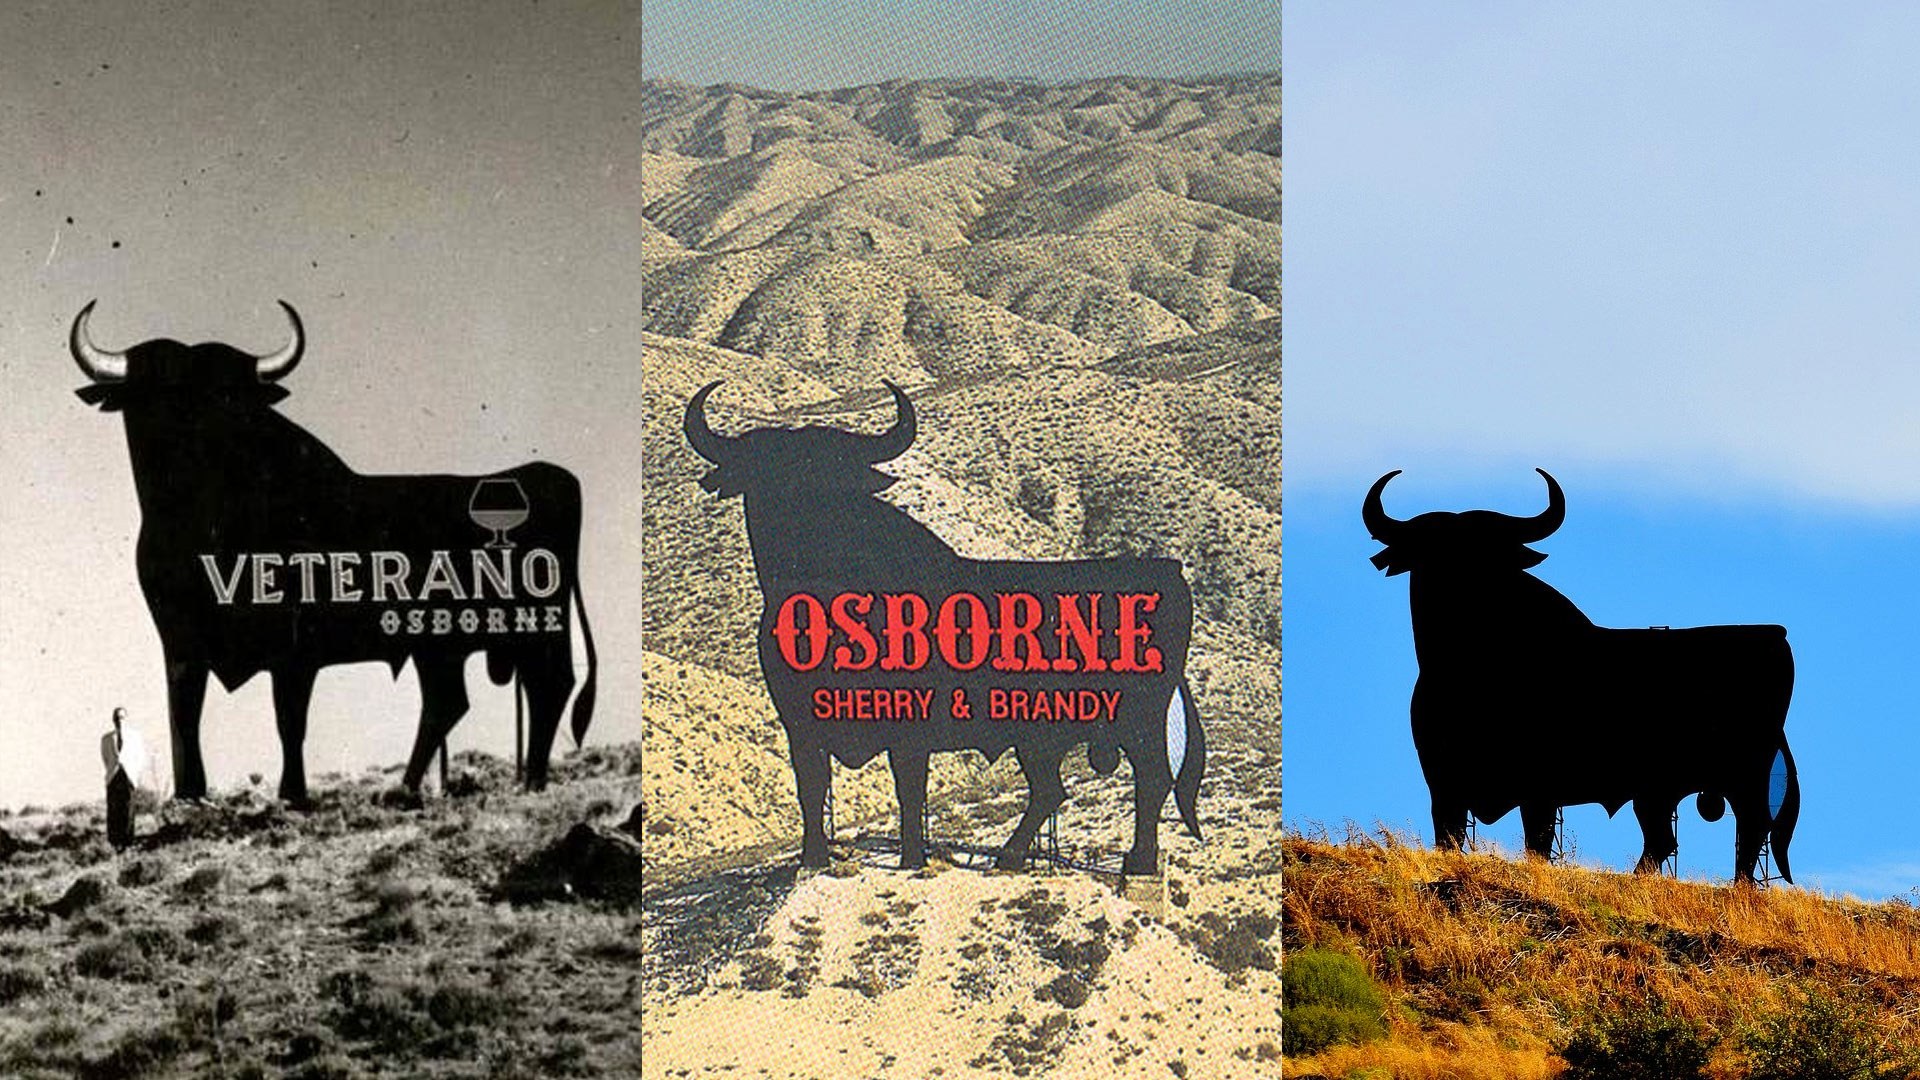 04 manolo prieto imagenes brandemia blog - Historia de la carretera: El Toro de Osborne (Toro Español)